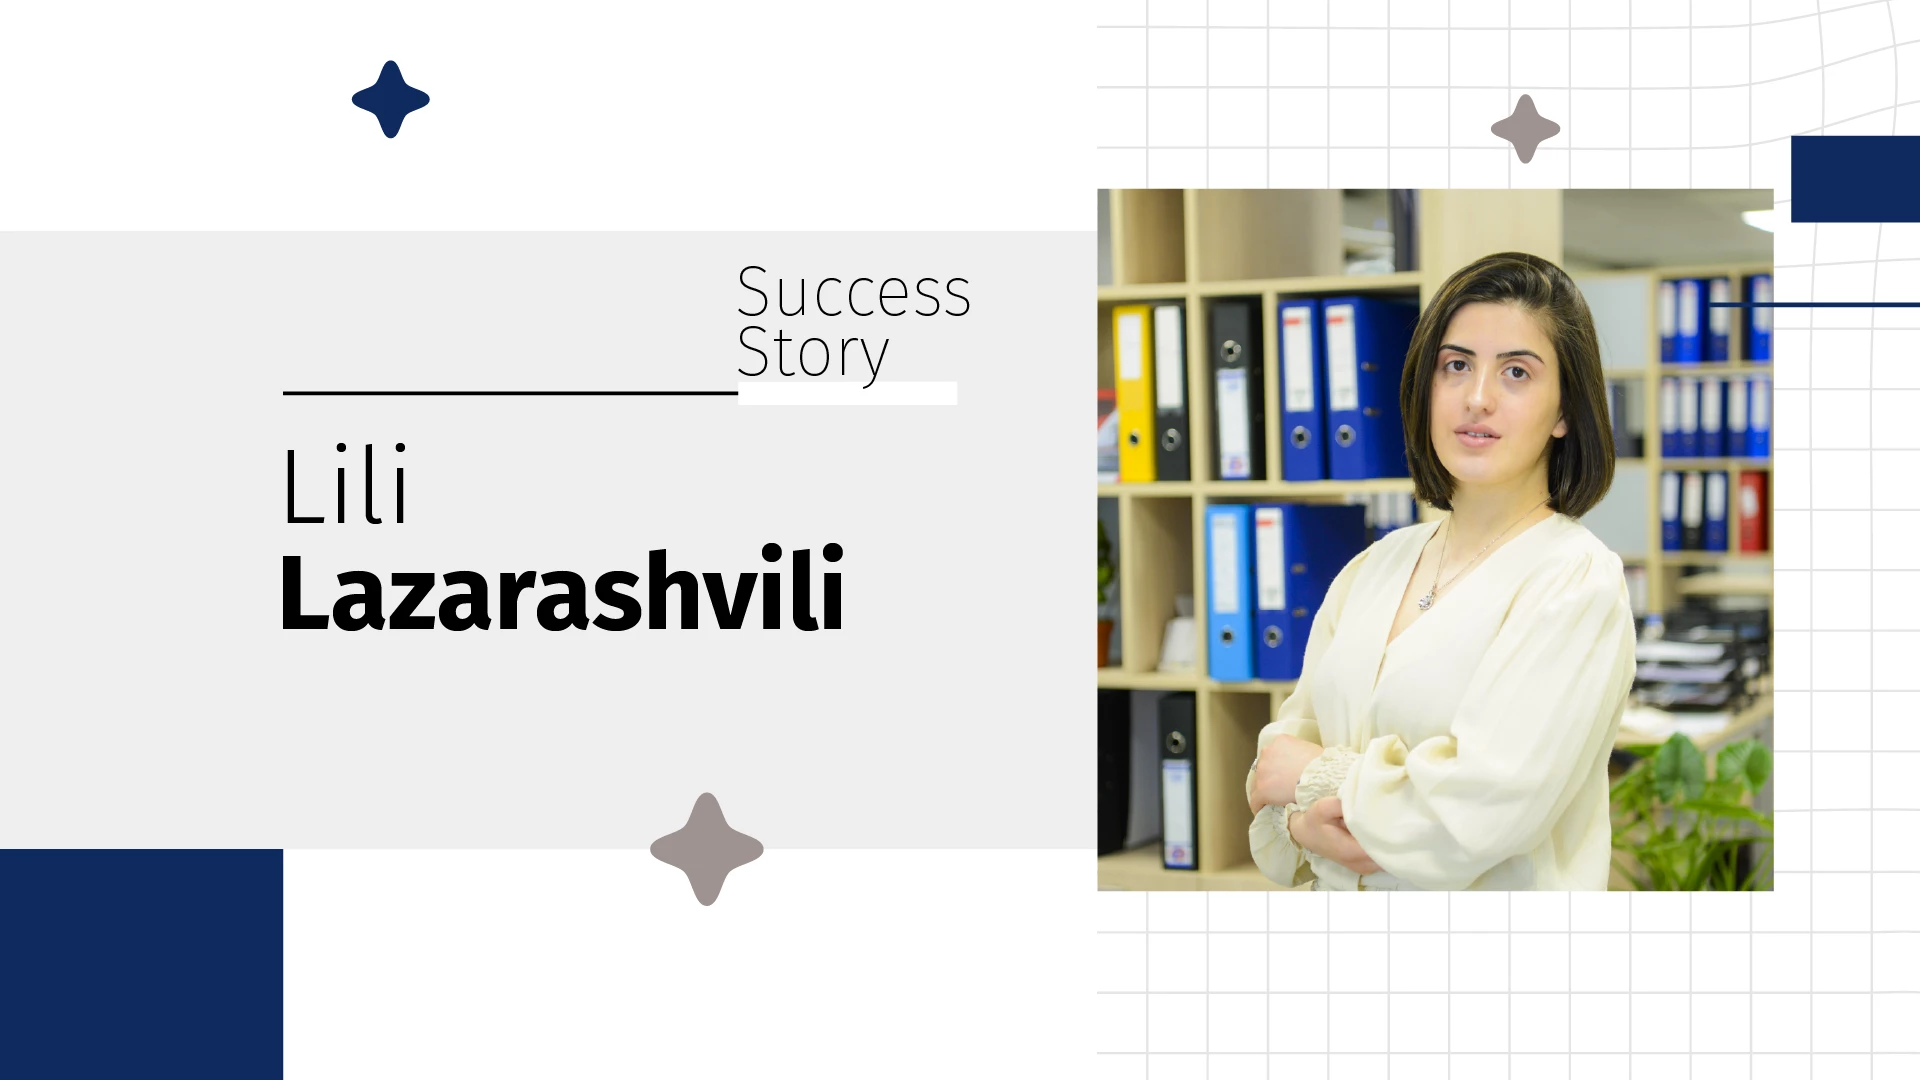 News: Lili Lazarashvili